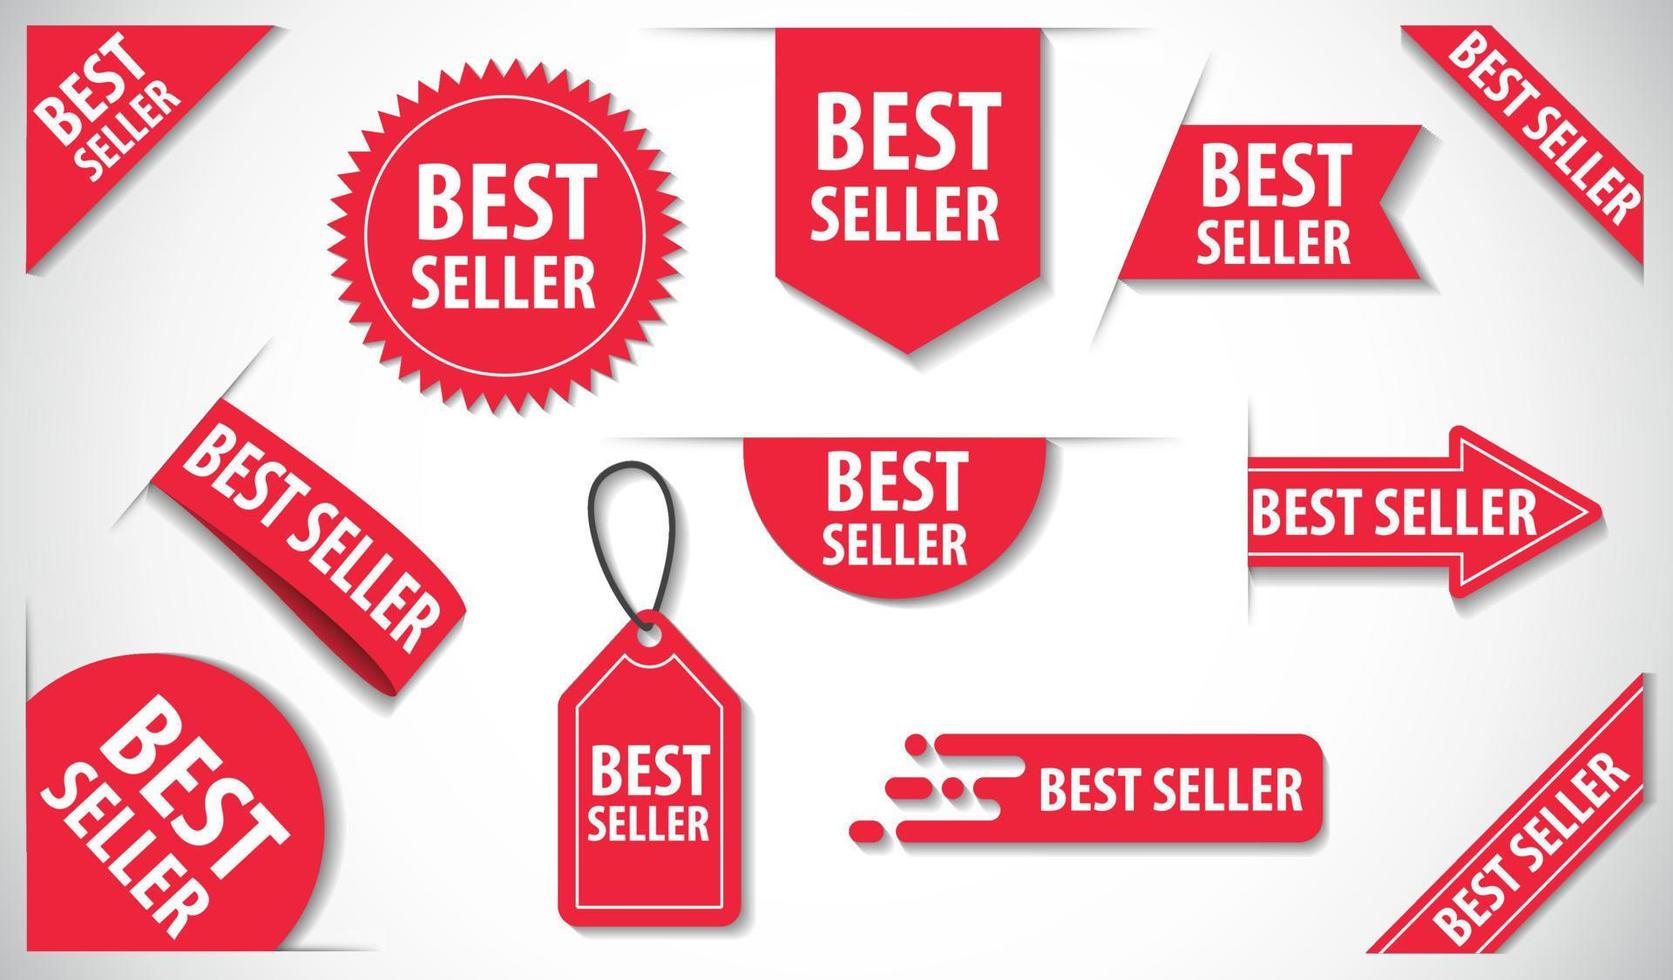 collezione di tag best seller, etichette rosse vettoriali isolate su sfondo bianco.